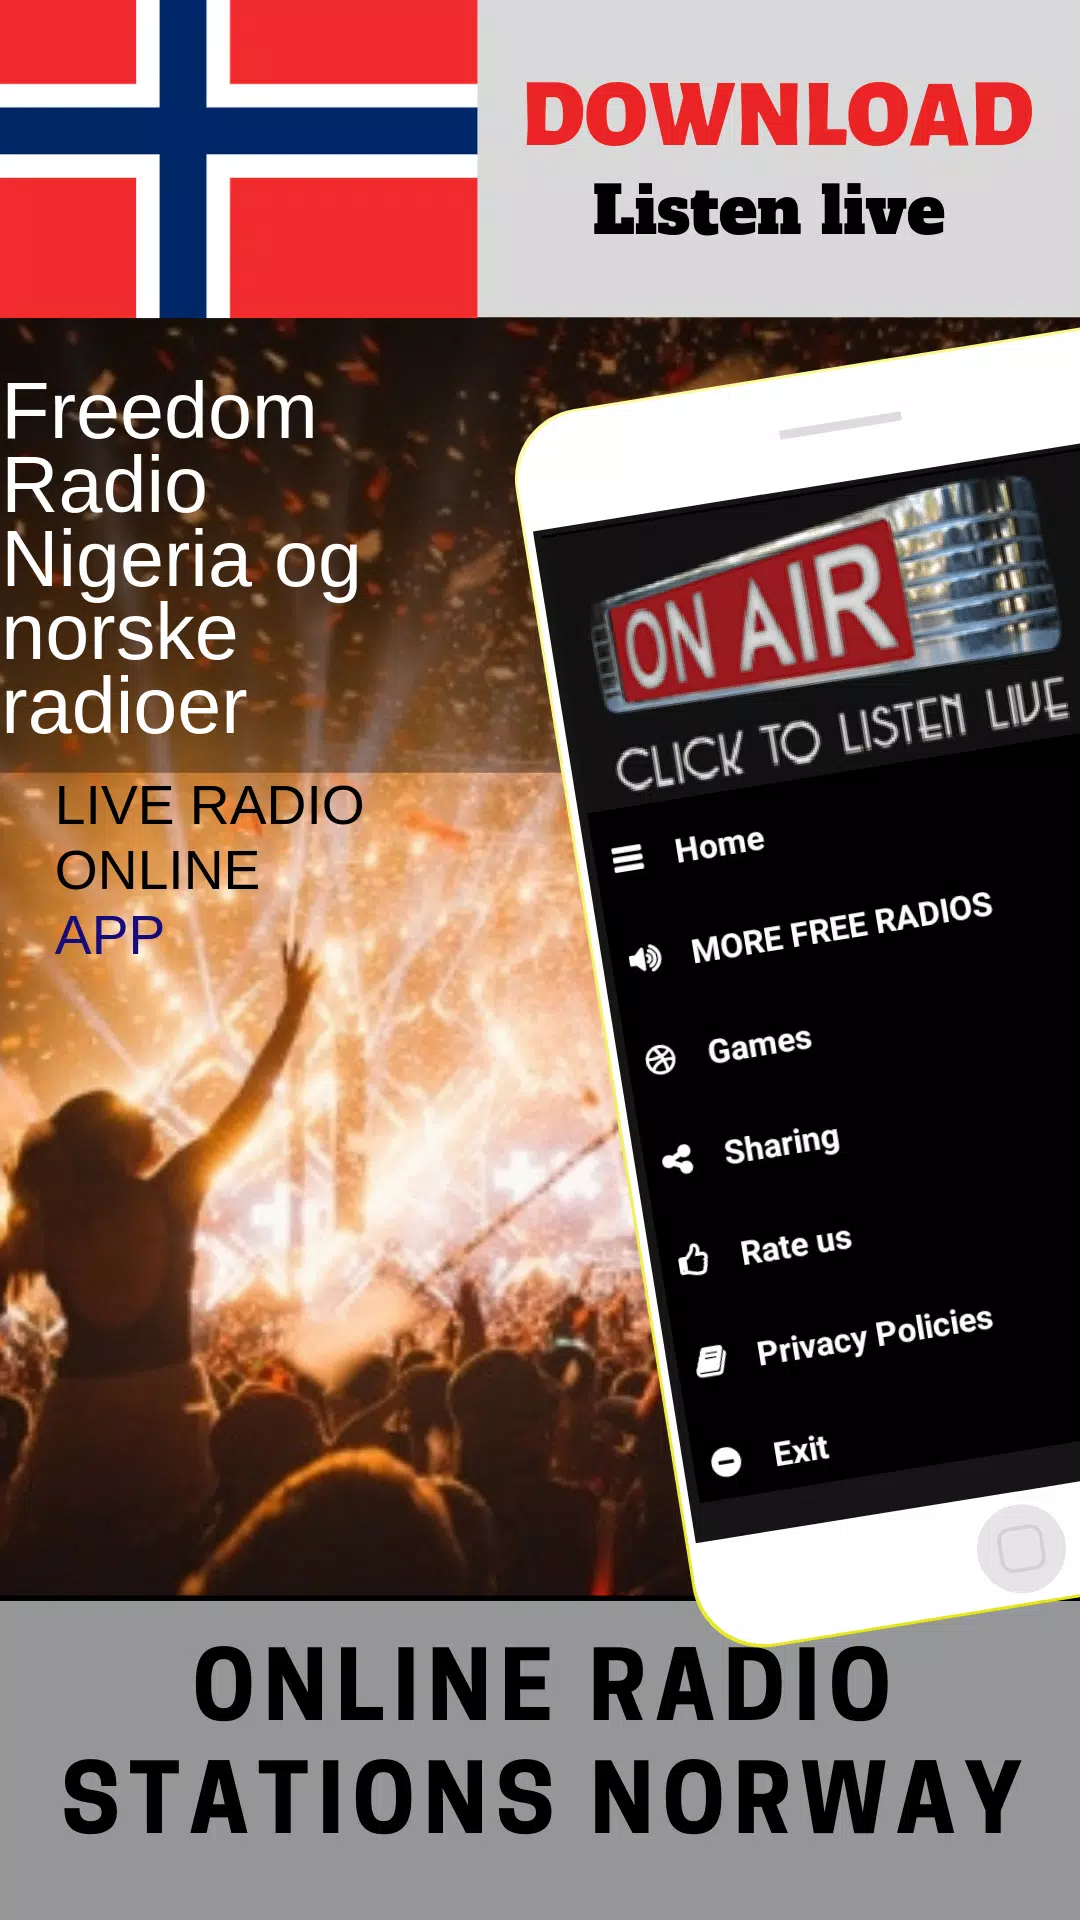 Freedom Radio Nigeria og norske radioer APK for Android Download